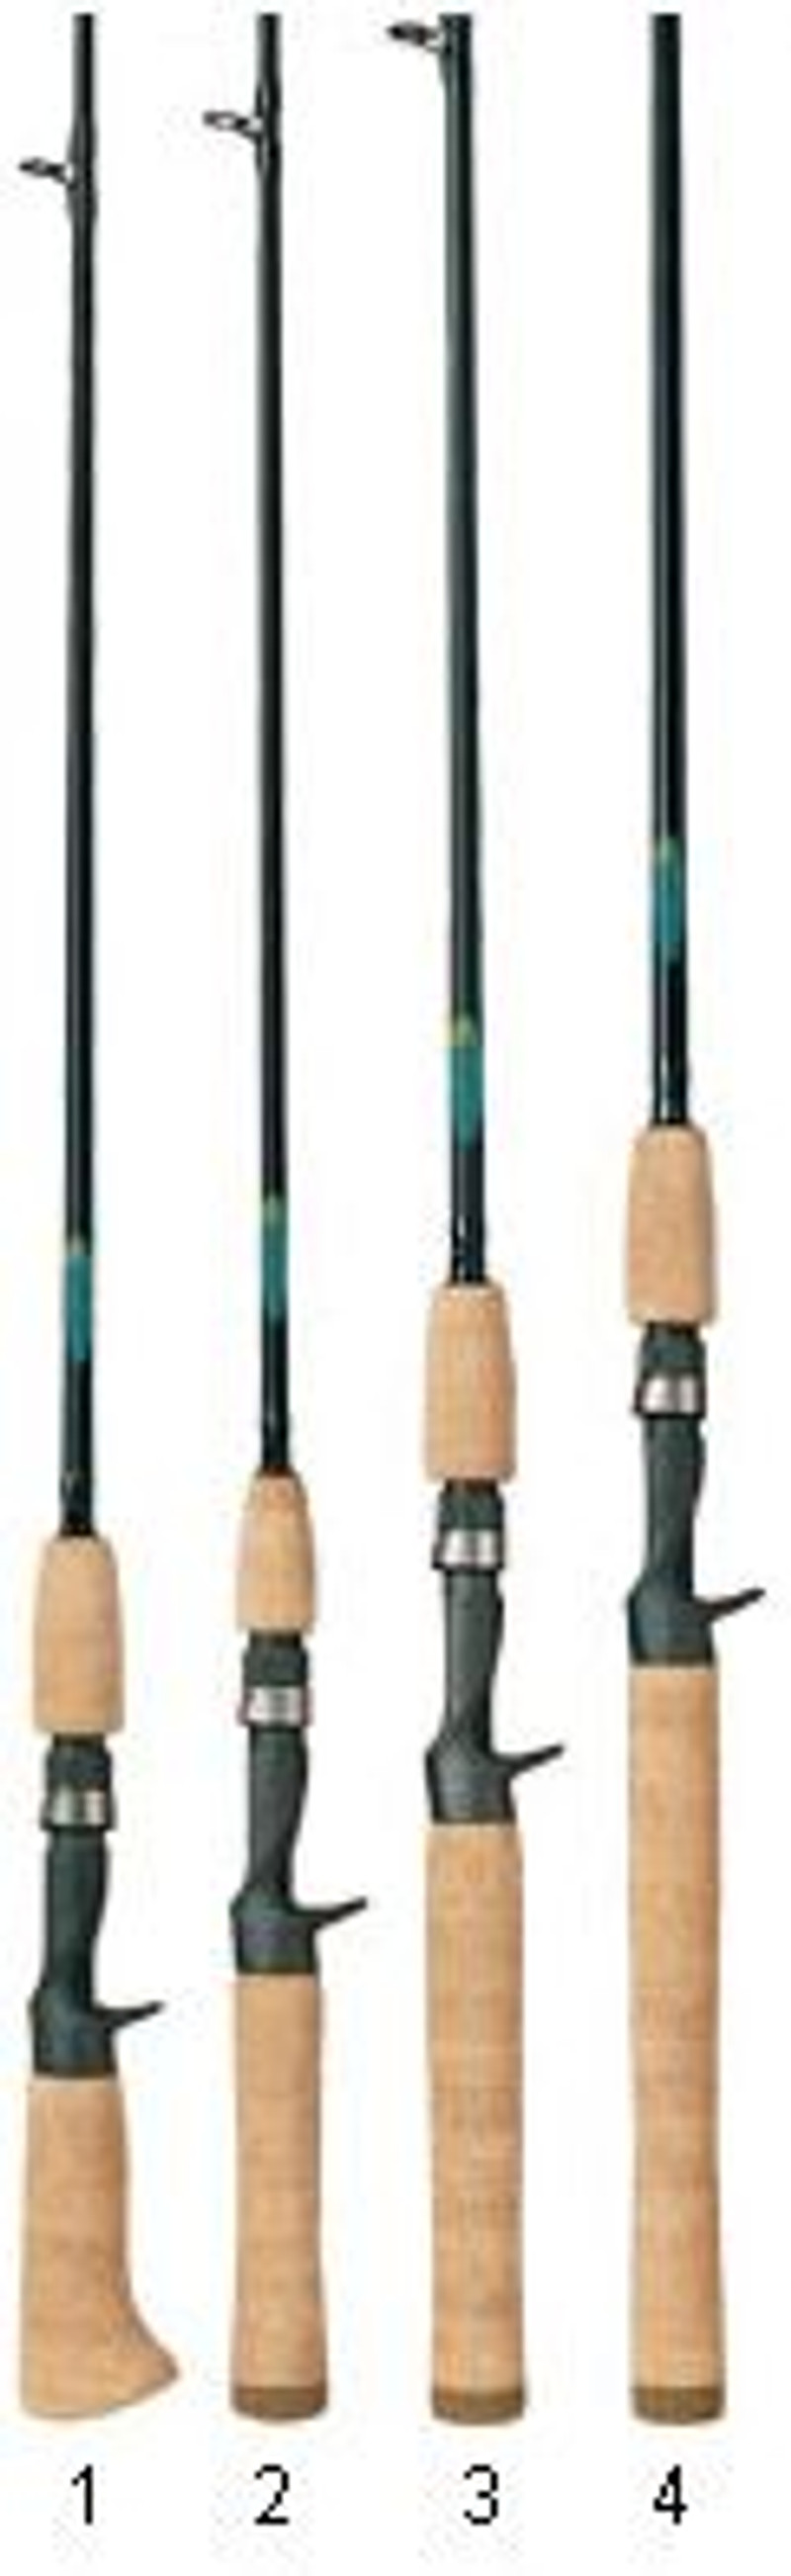 St Croix Premier Casting Rods, St Croix Fishing Rods, St Croix Rods